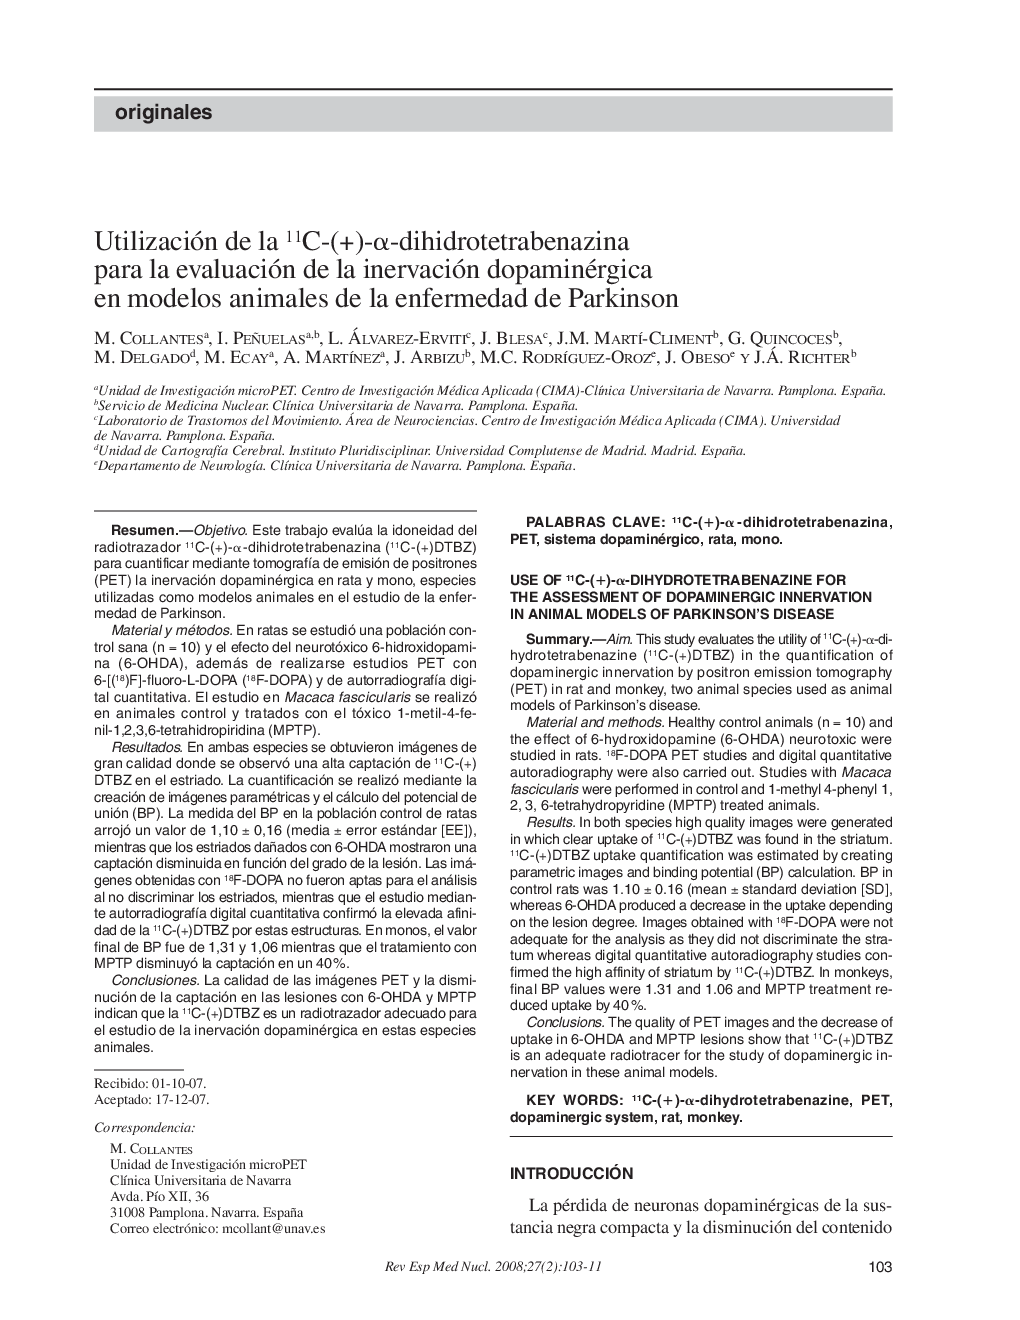 Utilización de la 11C-(+)-α-dihidrotetrabenazina para la evaluación de la inervación dopaminérgica en modelos animales de la enfermedad de Parkinson